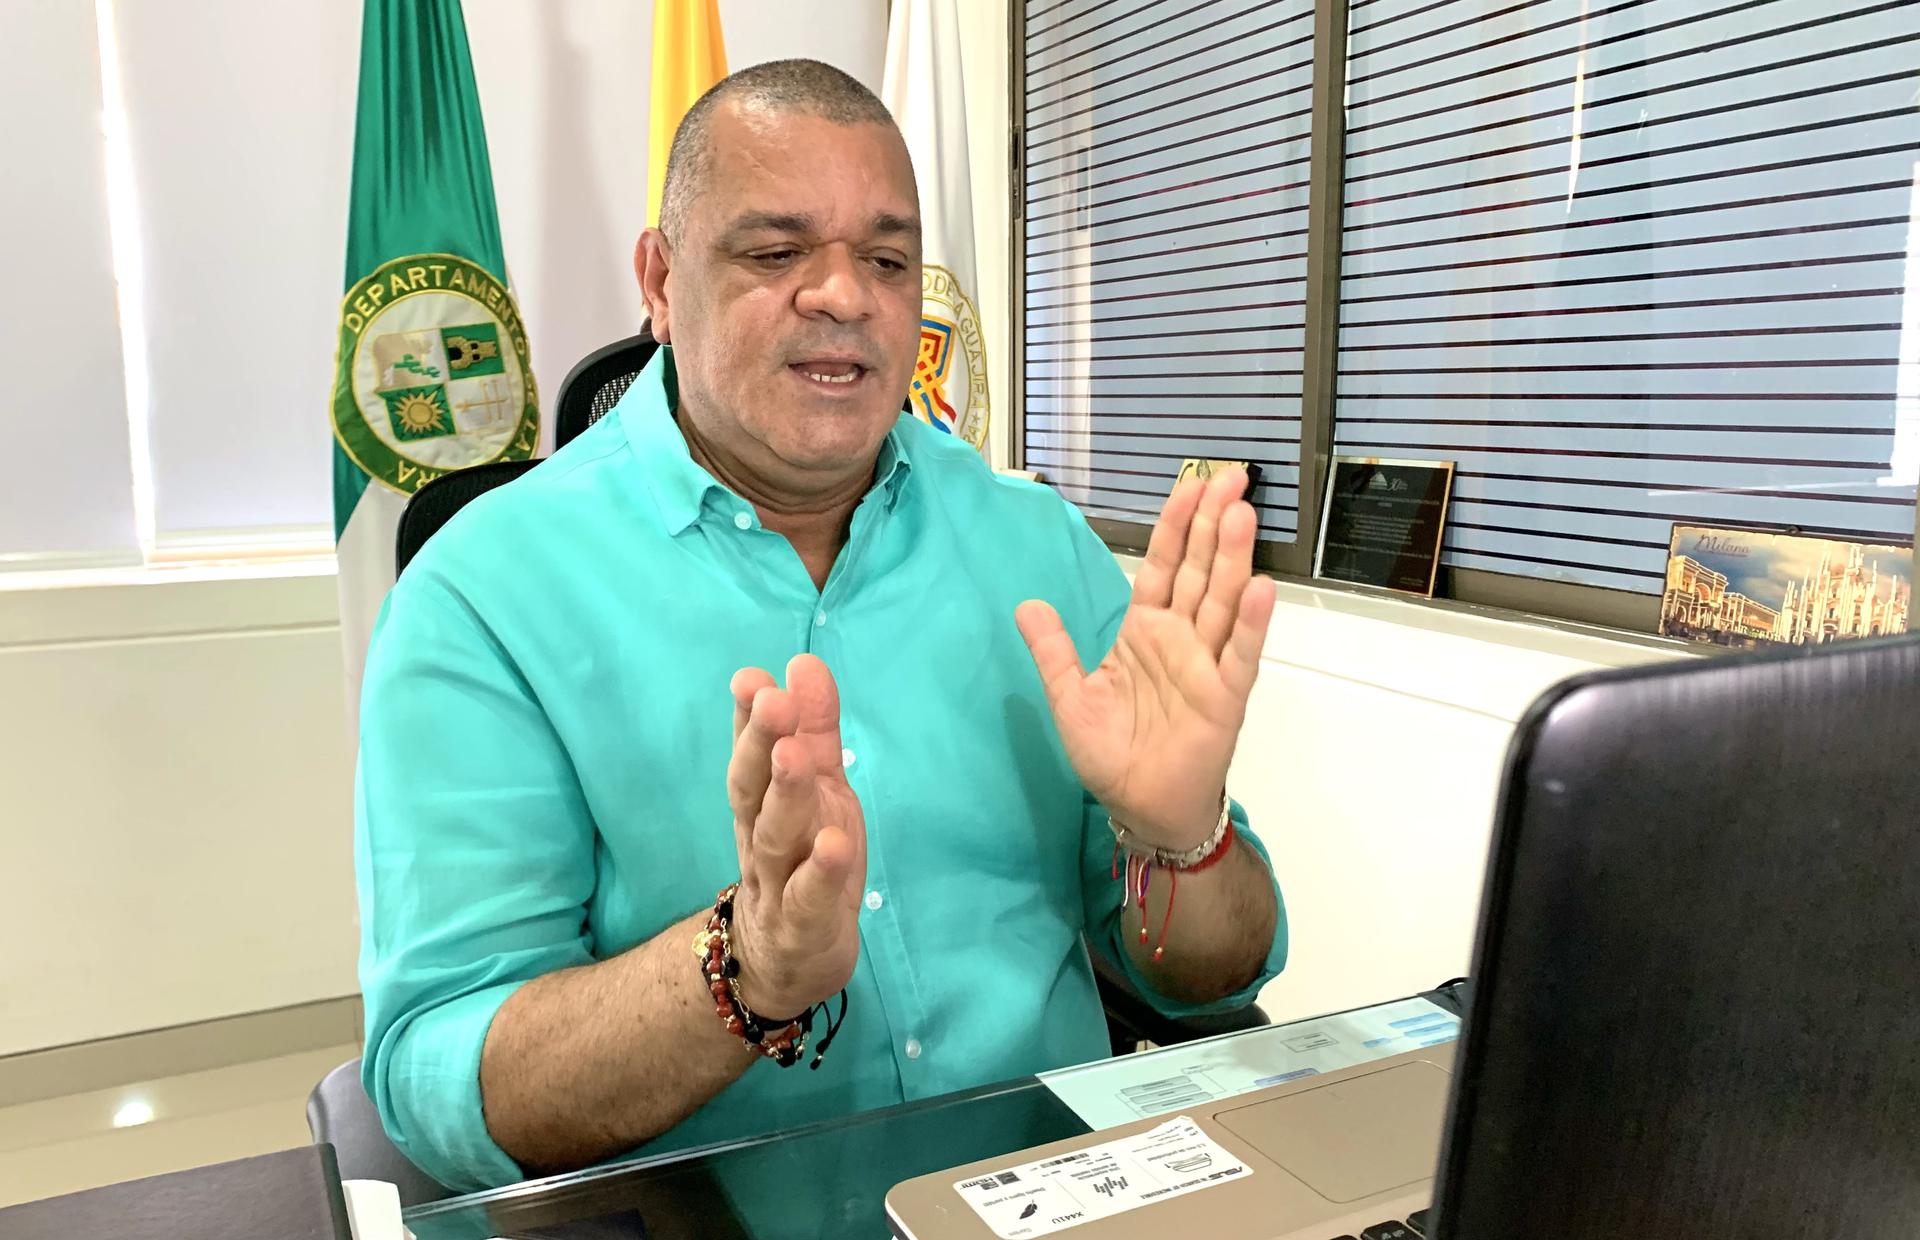 hoyennoticia.com, “Carlos Robles Julio: "La Guajira debe ser una fuente de formulación de proyectos”,